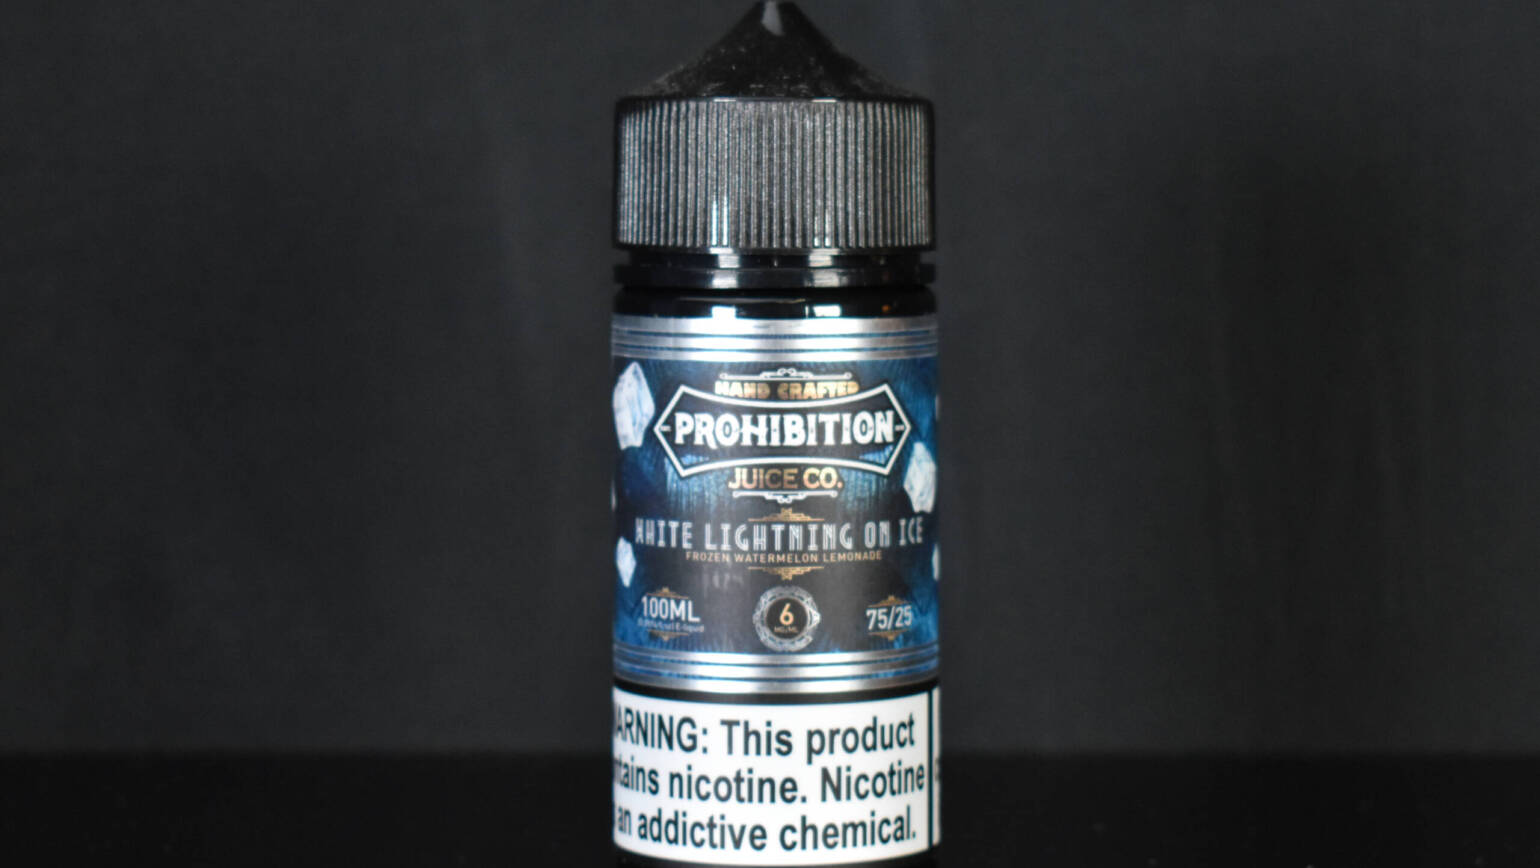 Prohibition Juice Co. – White Lightning on ICE